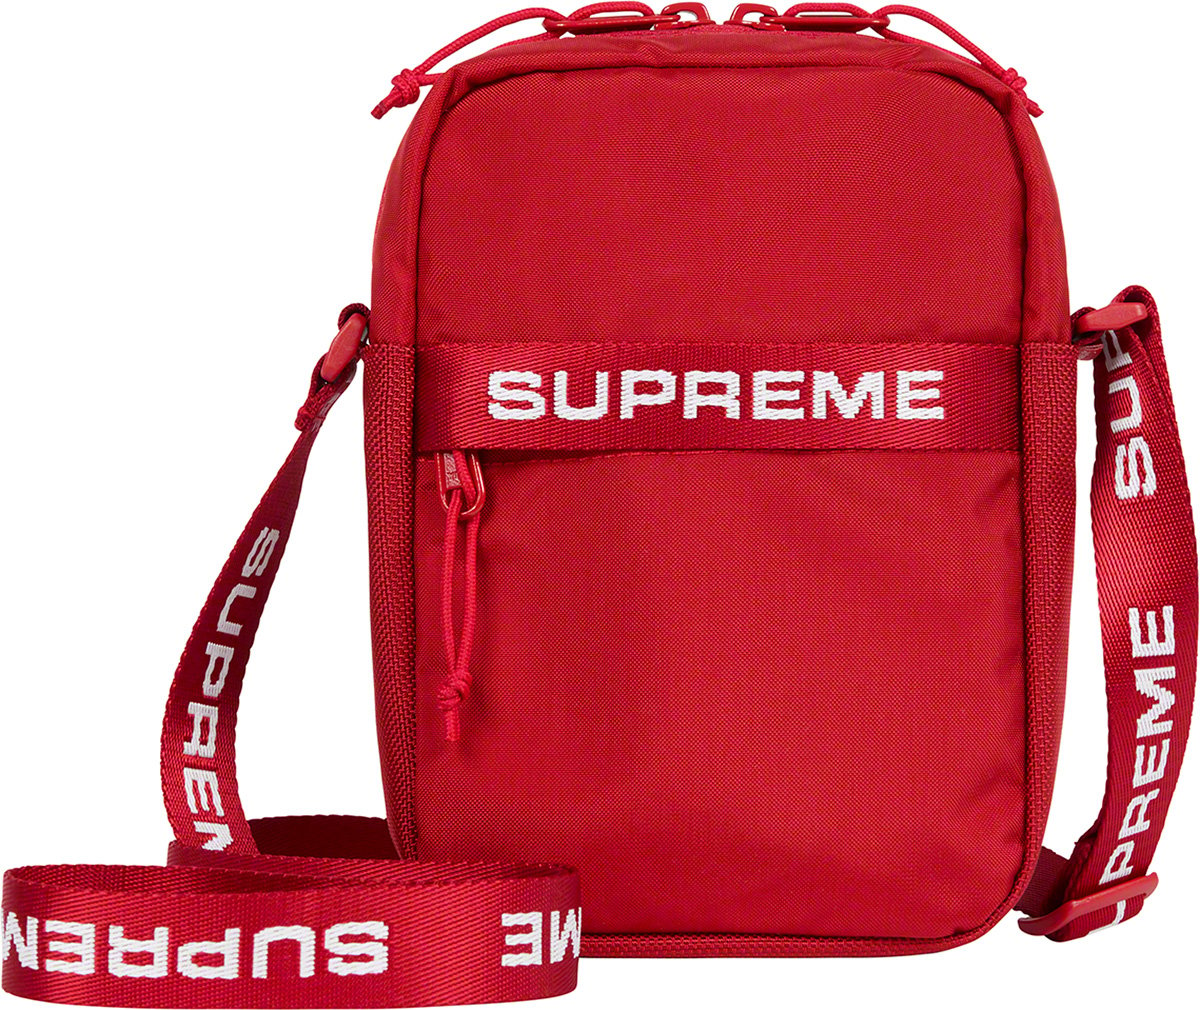 Supreme SS18 Shoulder Crossbody Bag Red